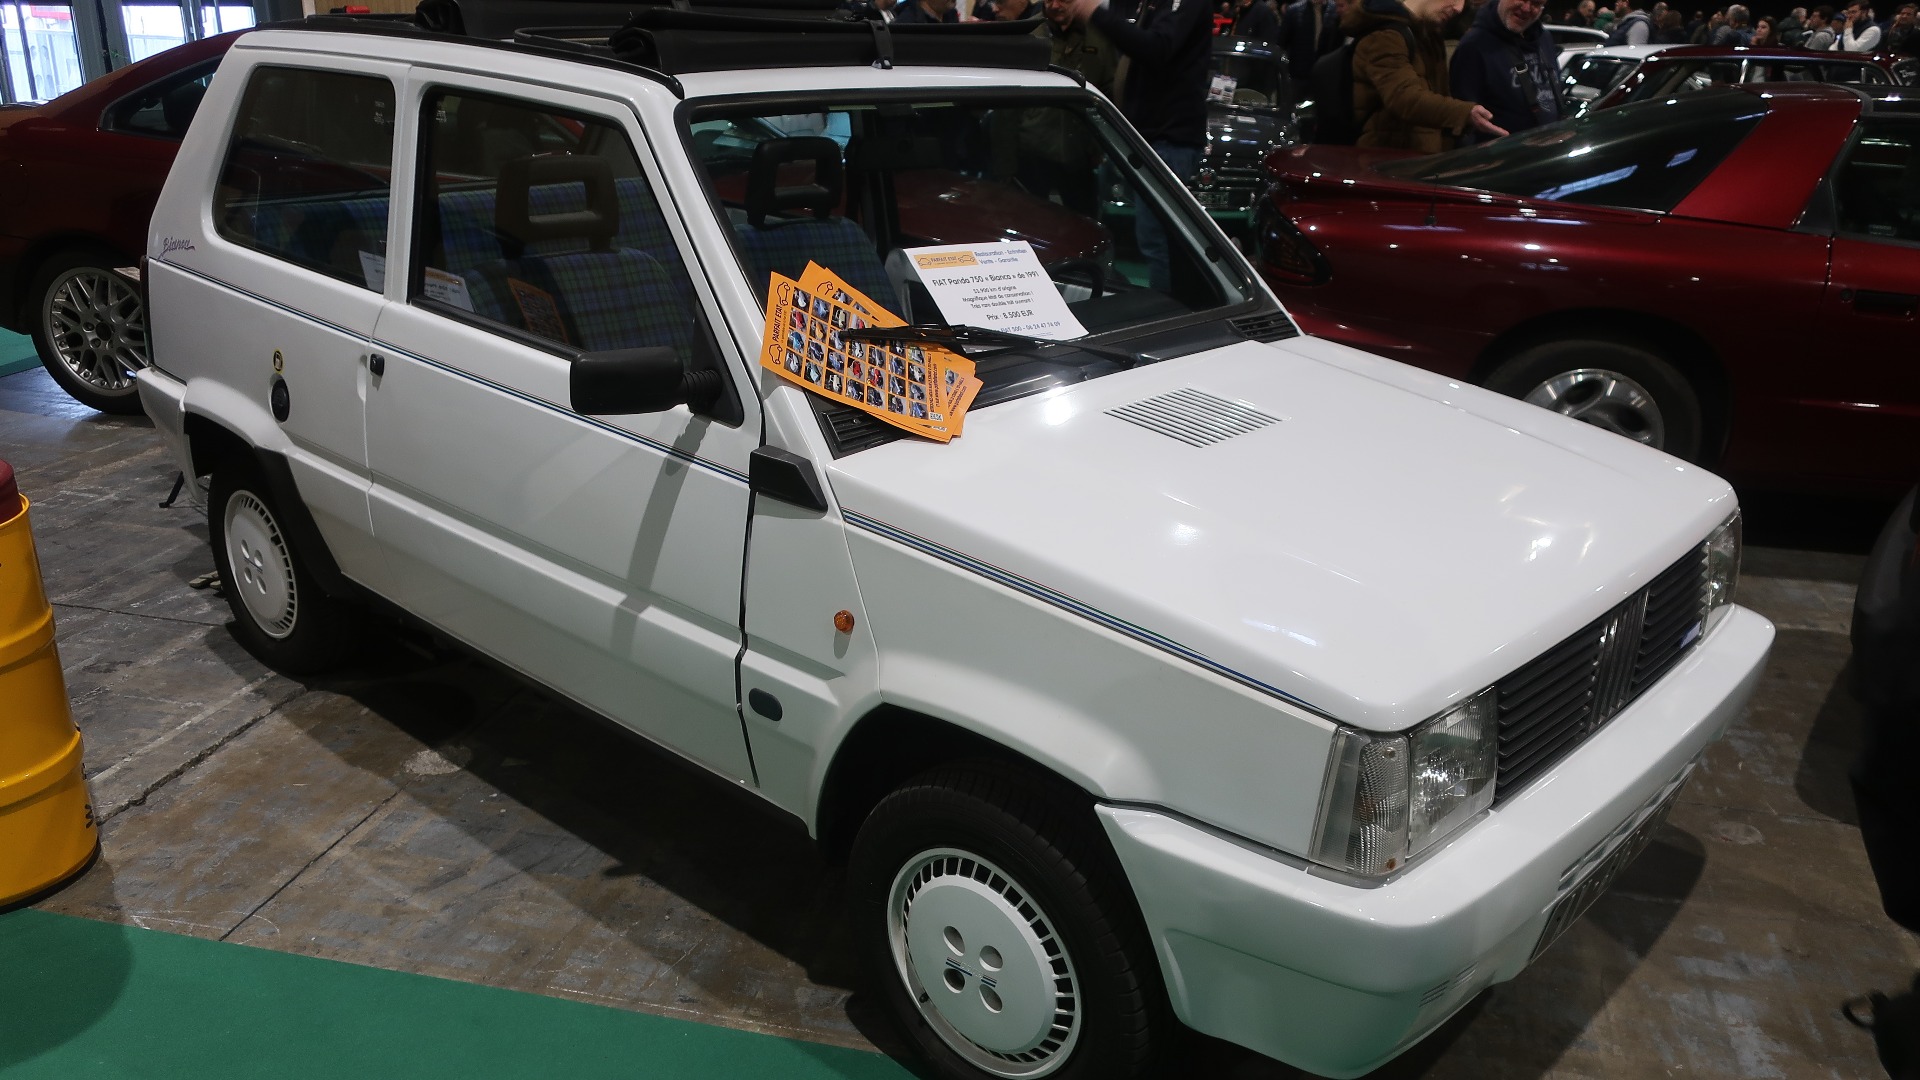 Italiensk sjarmør i form av en 1991 Fiat Panda Bianca med 54.000 km innabords. Pris særdeles hyggelige 8500 Euro.